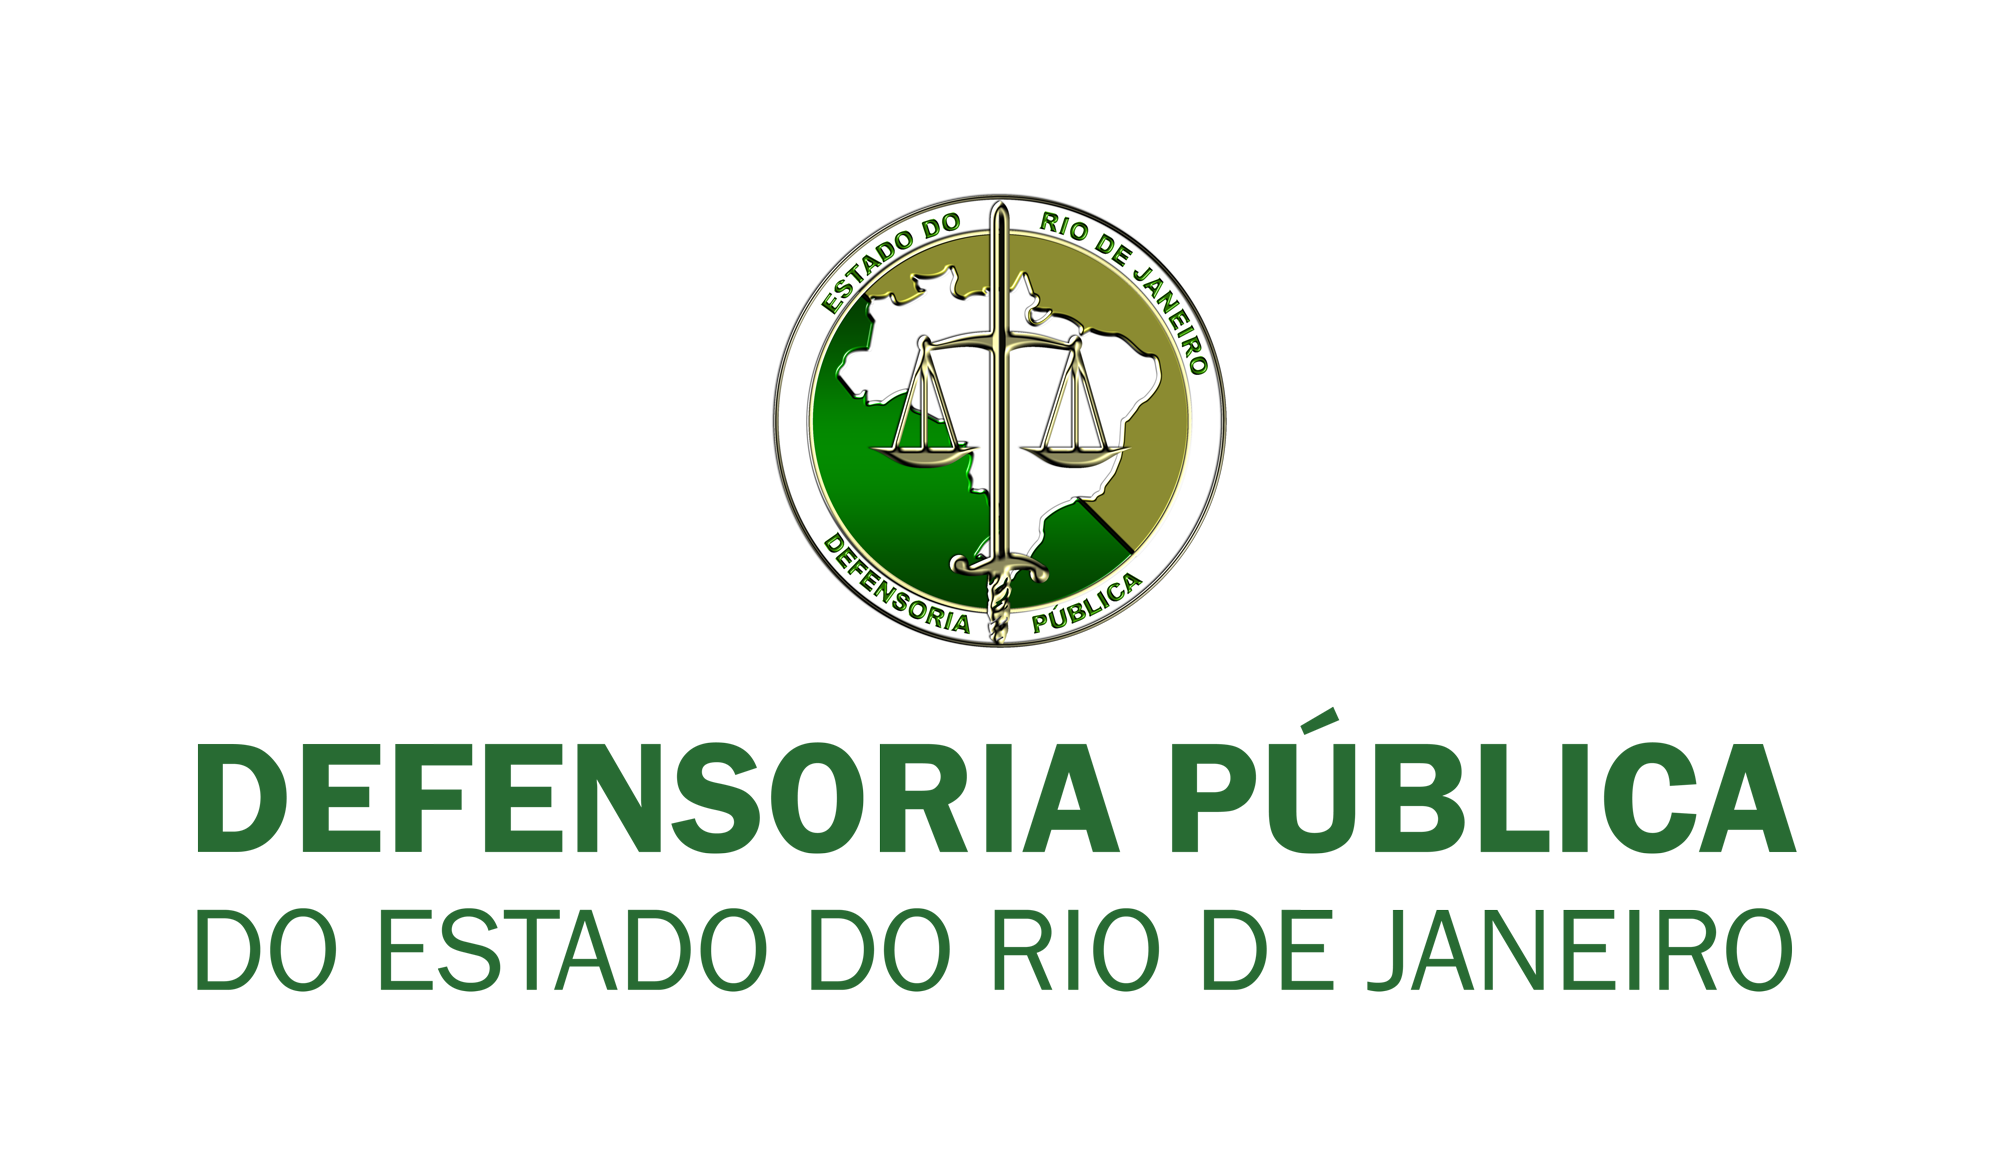 Defensoria Pública do Rio de Janeiro | https://defensoria.rj.def.br/